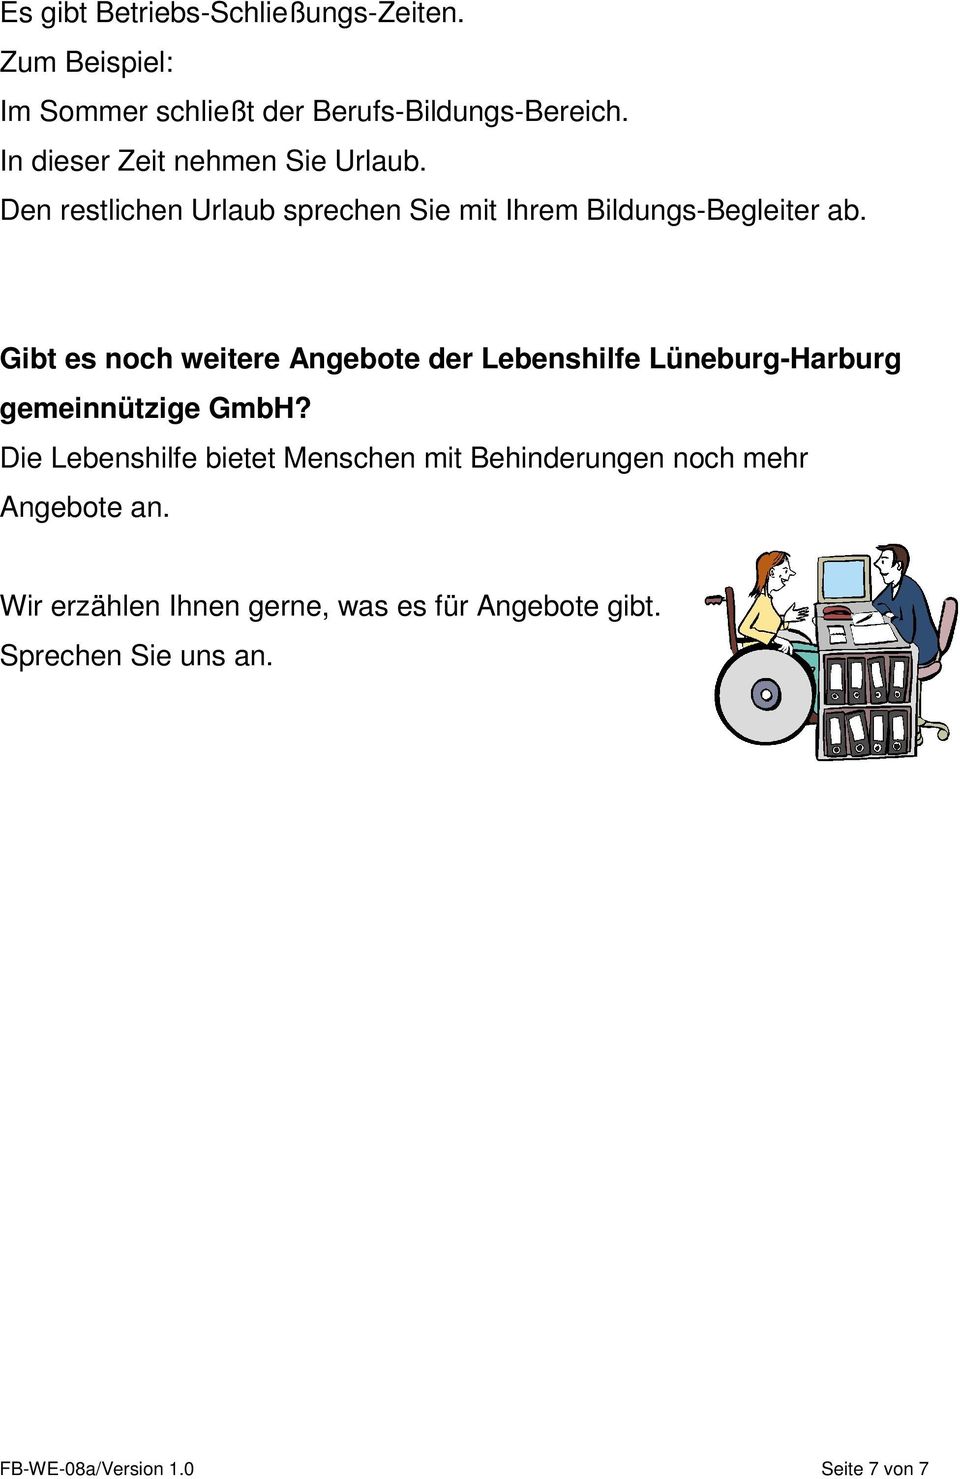 Gibt es noch weitere Angebote der Lebenshilfe Lüneburg-Harburg gemeinnützige GmbH?